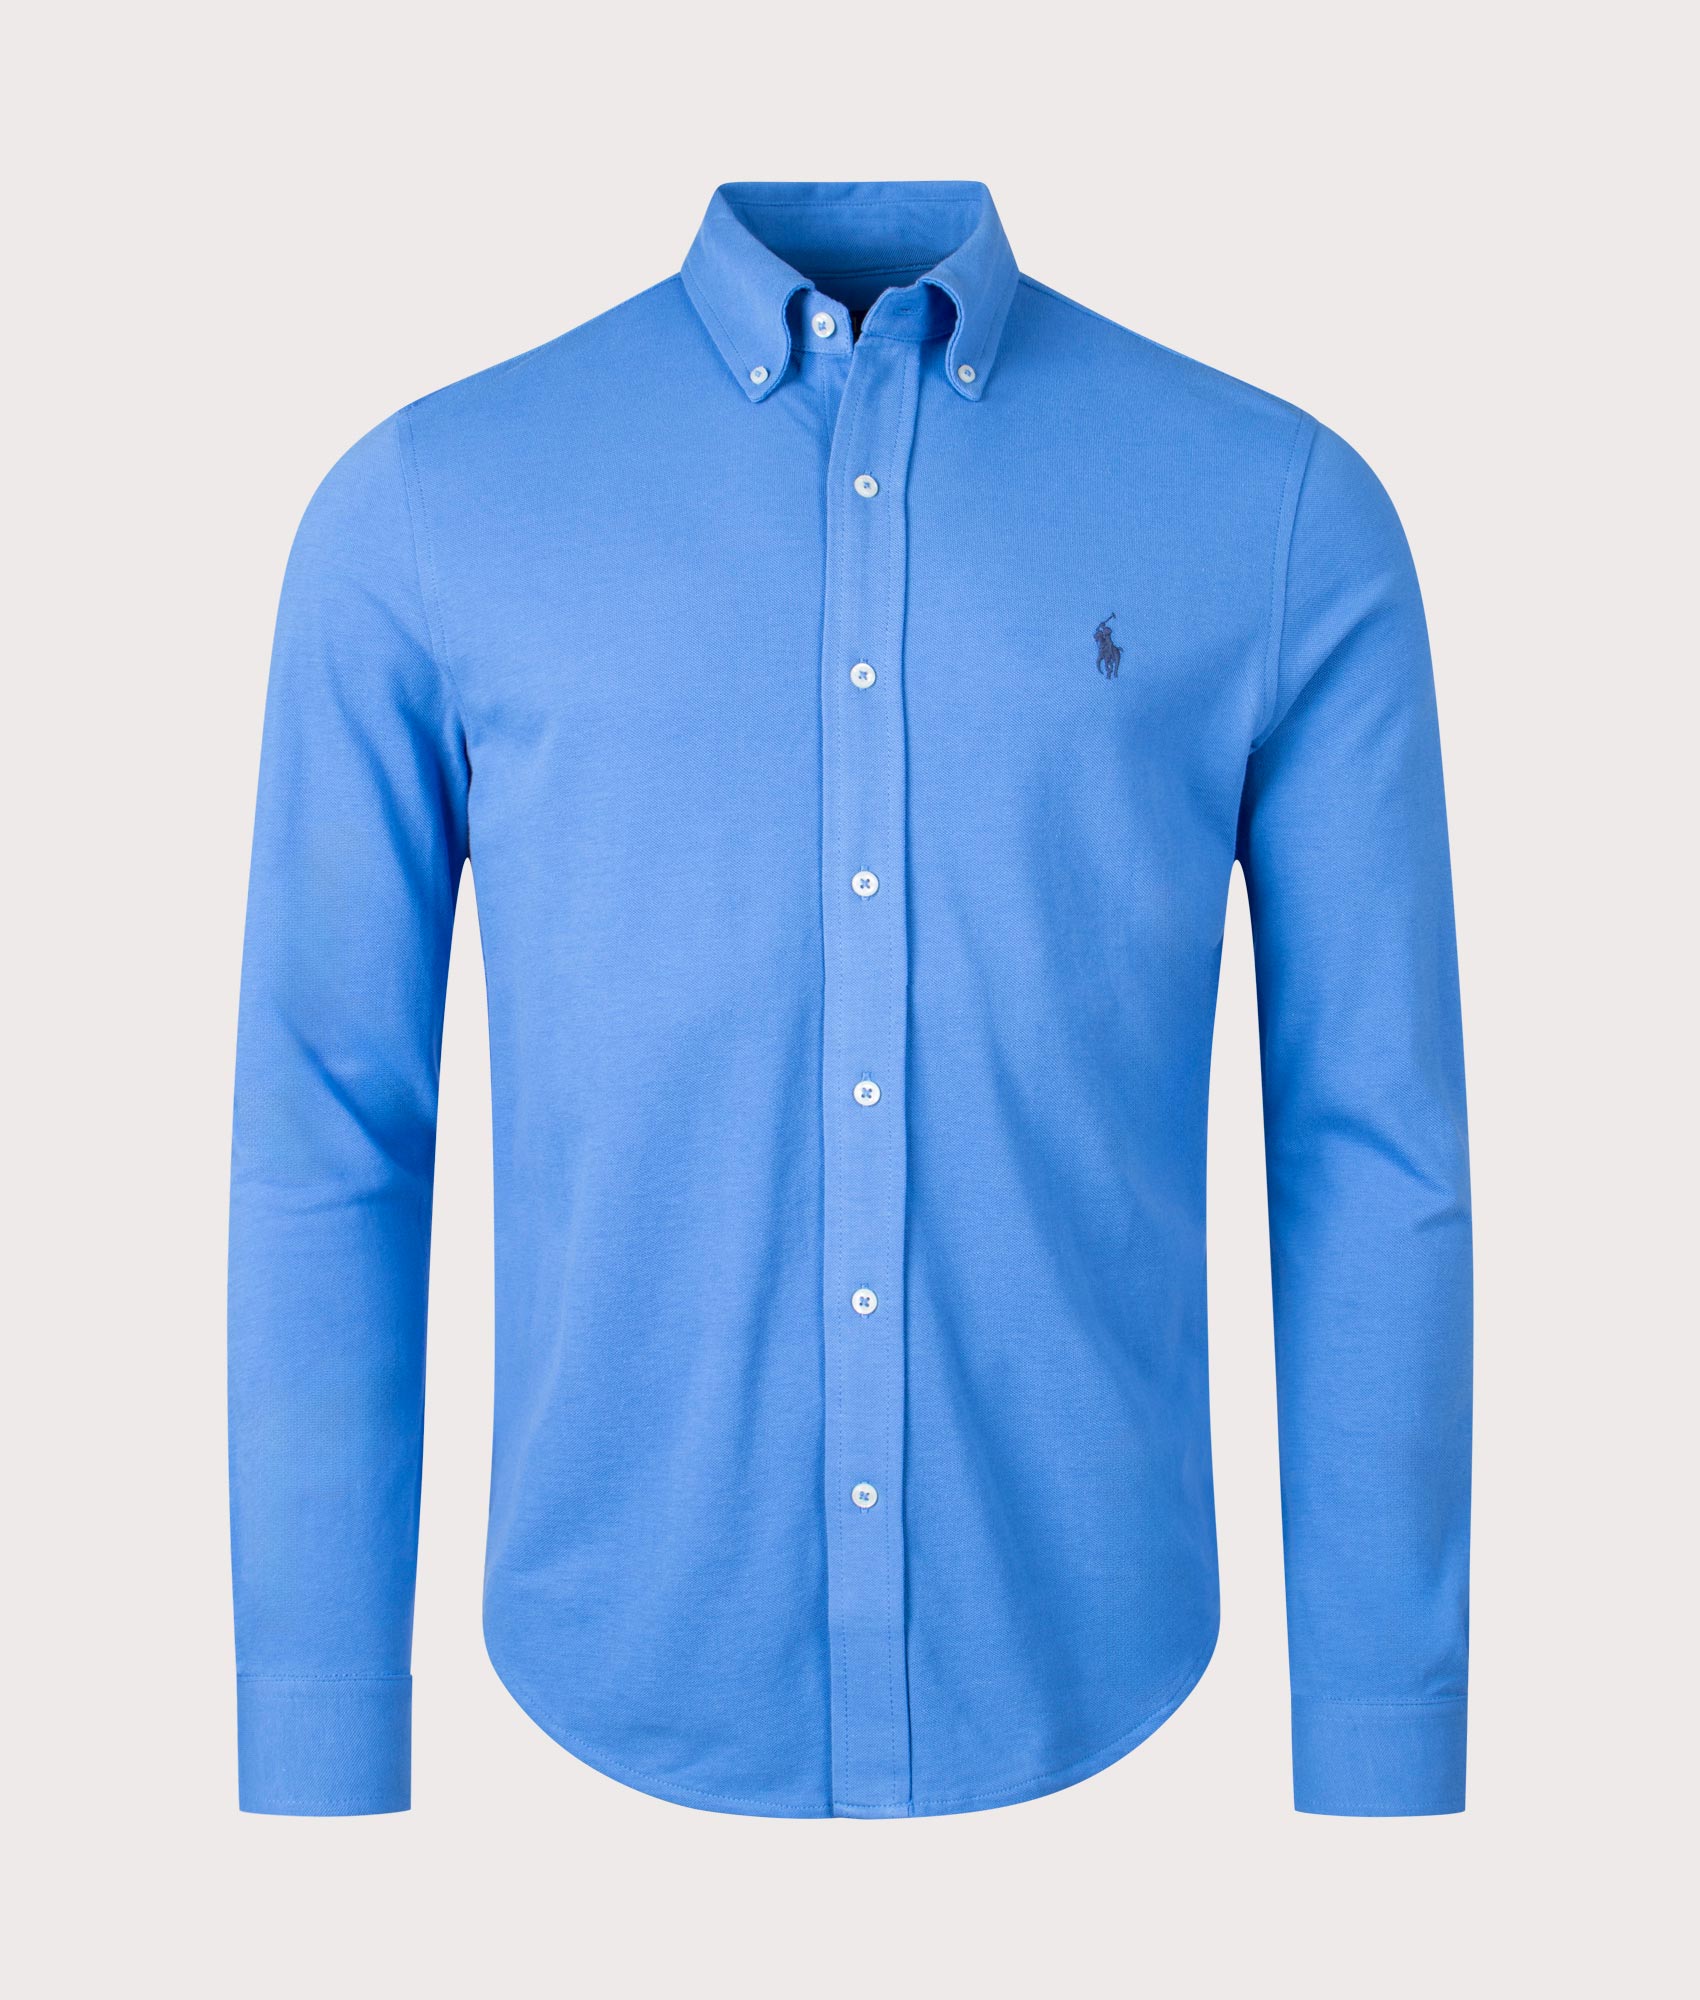 Polo Ralph Lauren Mens Featherweight Mesh Shirt - Colour: 121 New England Blue - Size: Medium